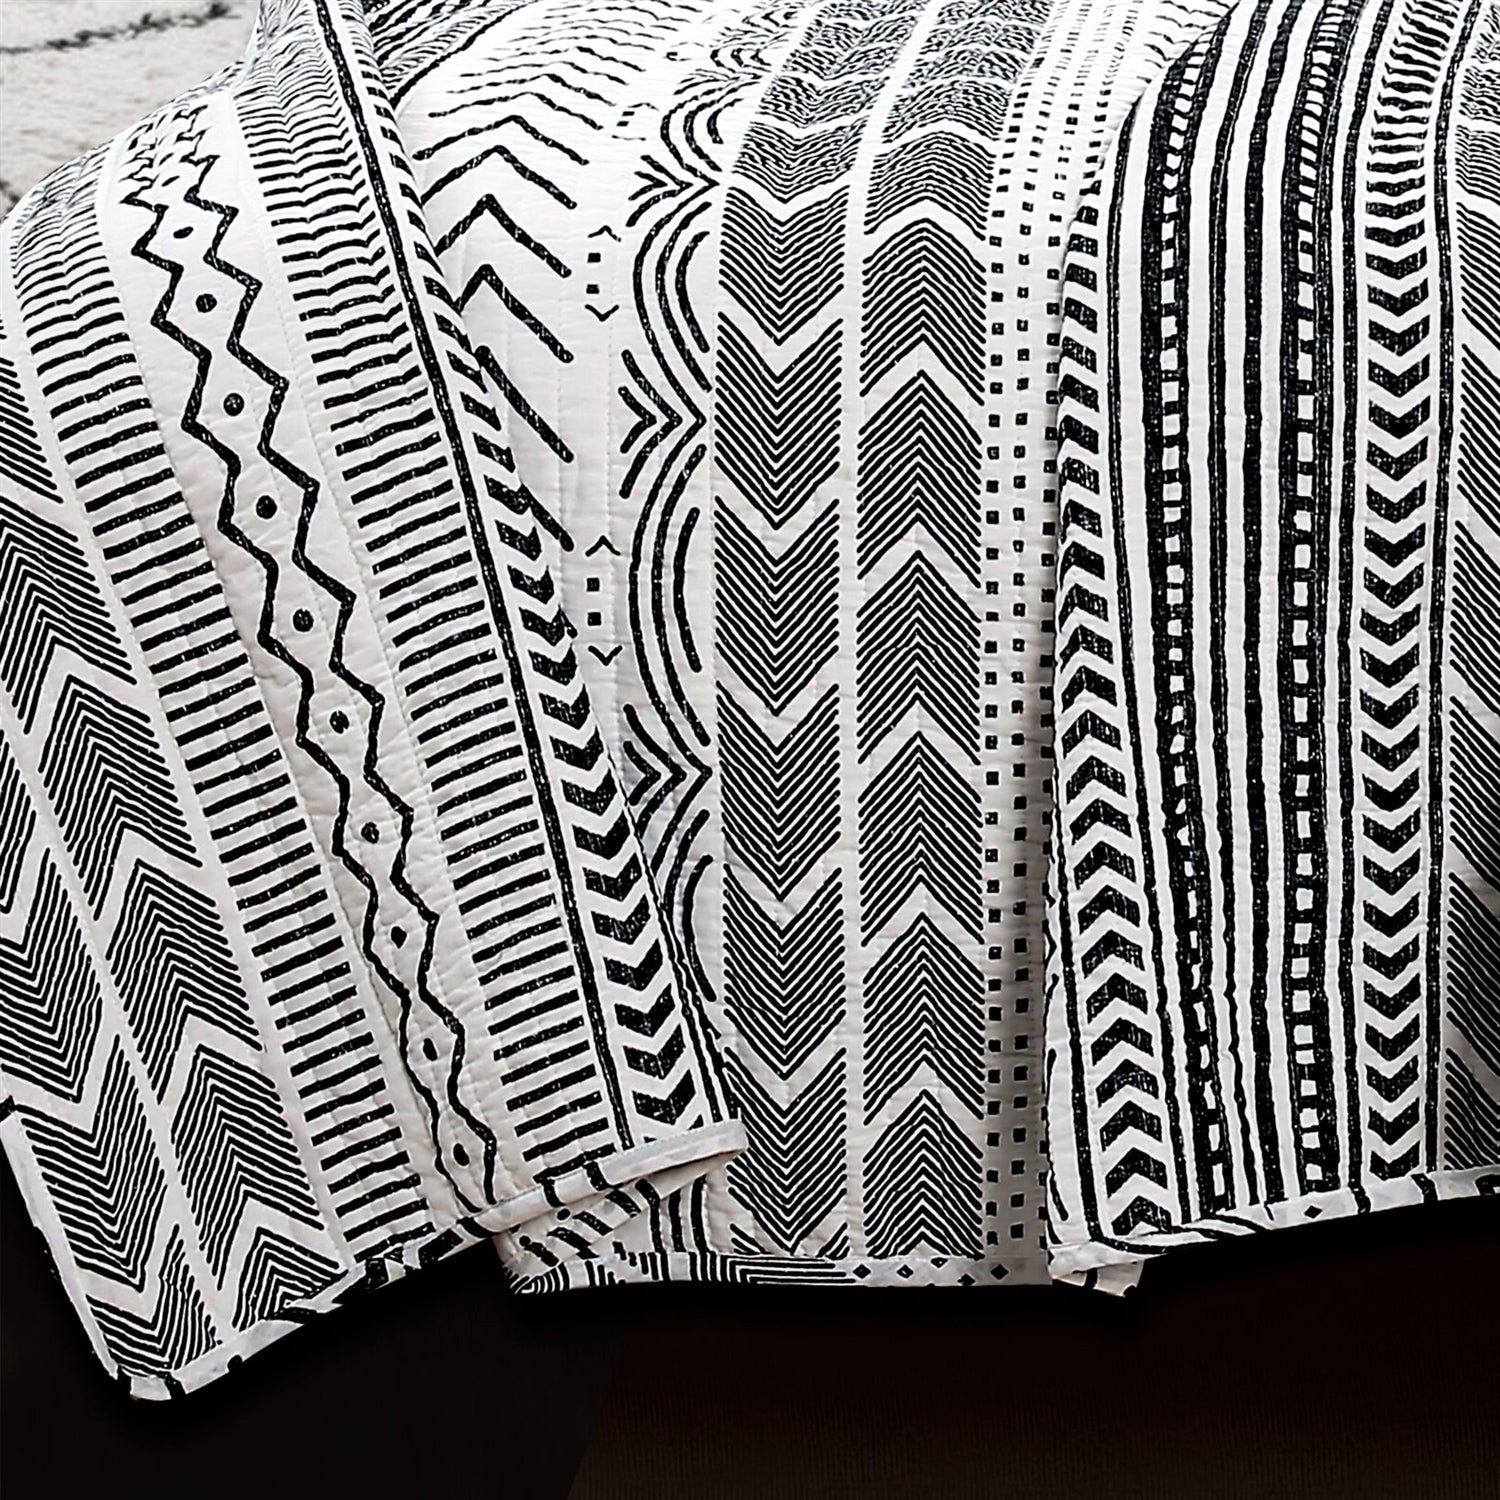 Bedroom > Quilts & Blankets - 3 Piece Scandinavian Black White Reversible Cotton Set In Full/Queen